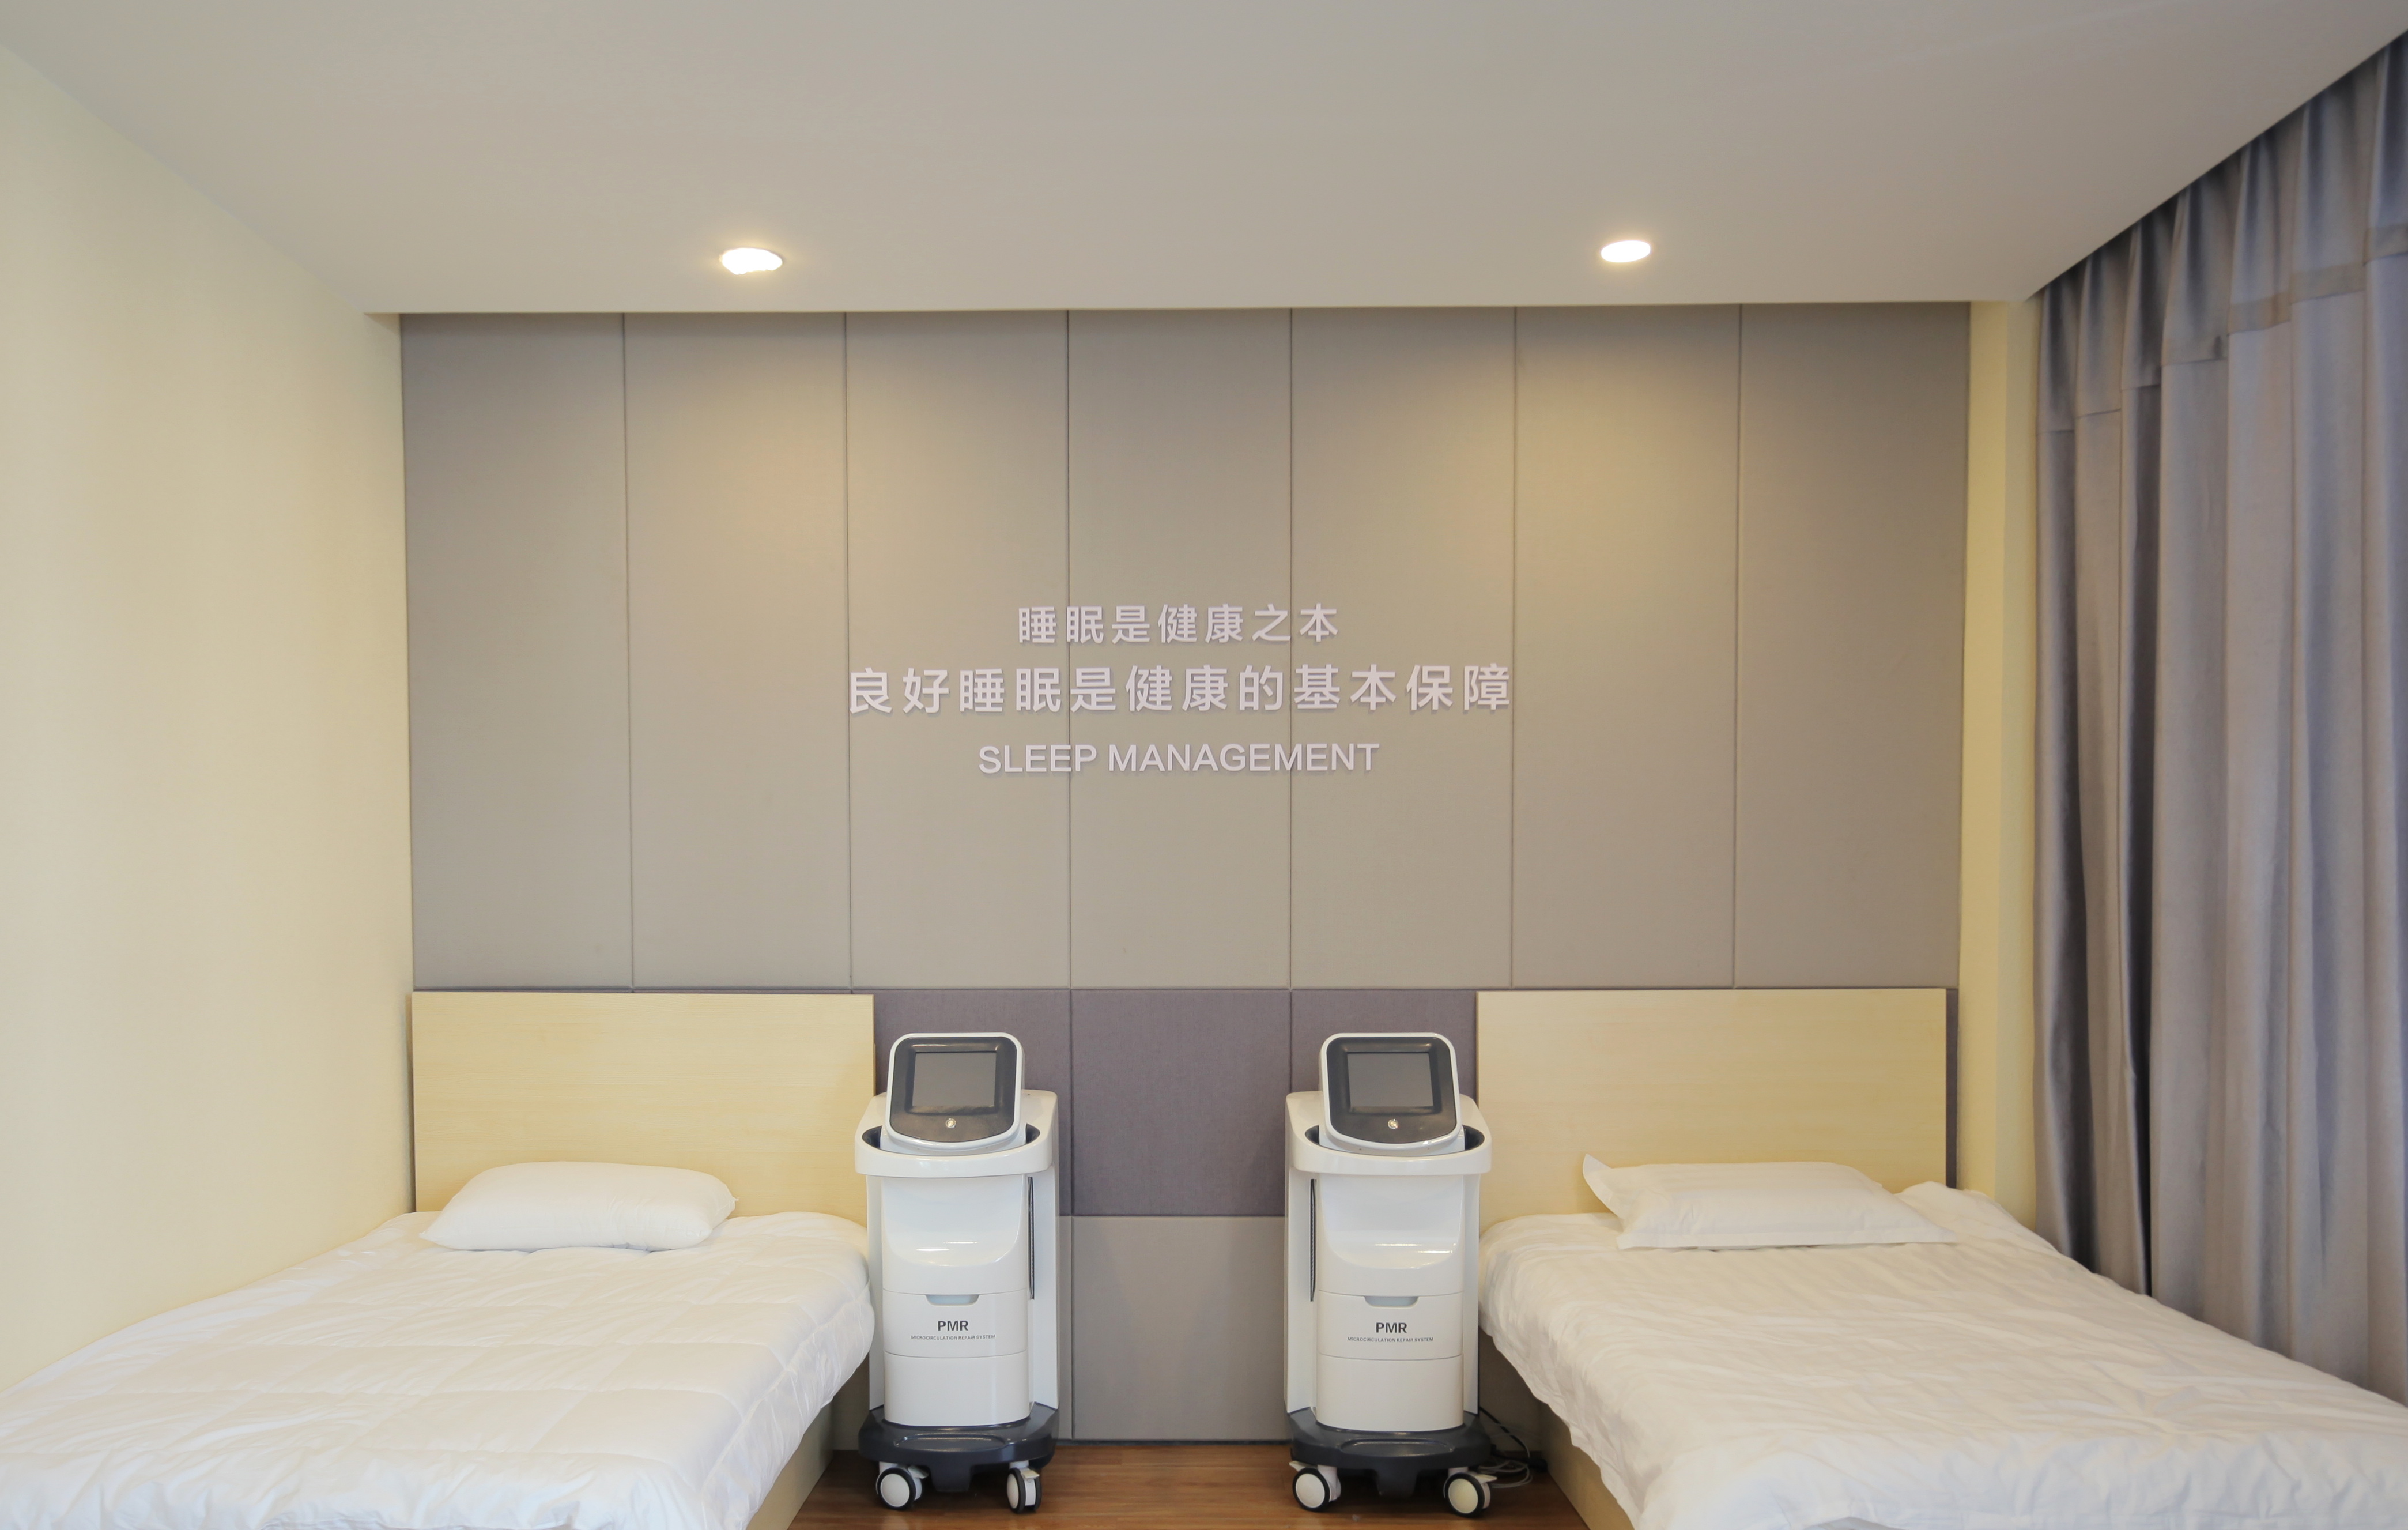 脉冲磁睡眠治疗设备助力康养酒店创新服务模式